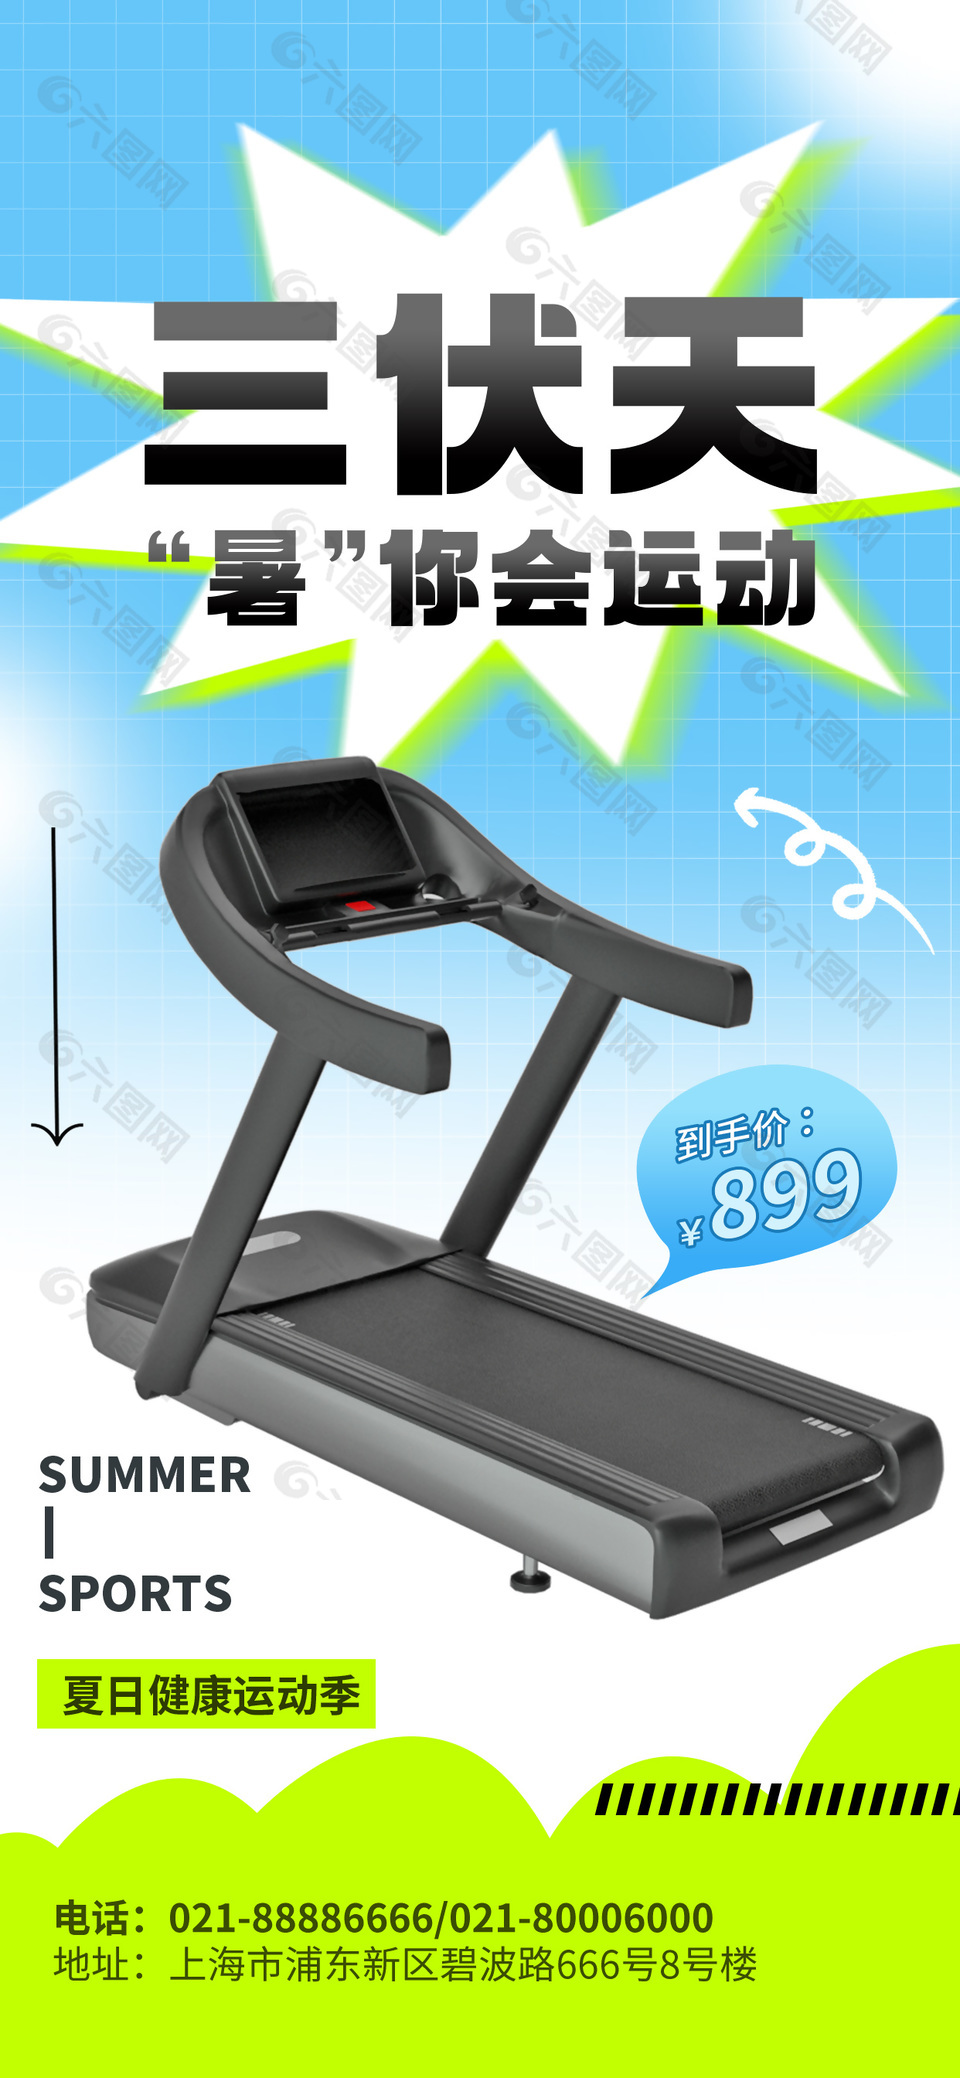 三伏天夏日健康运动季跑步机促销海报设计